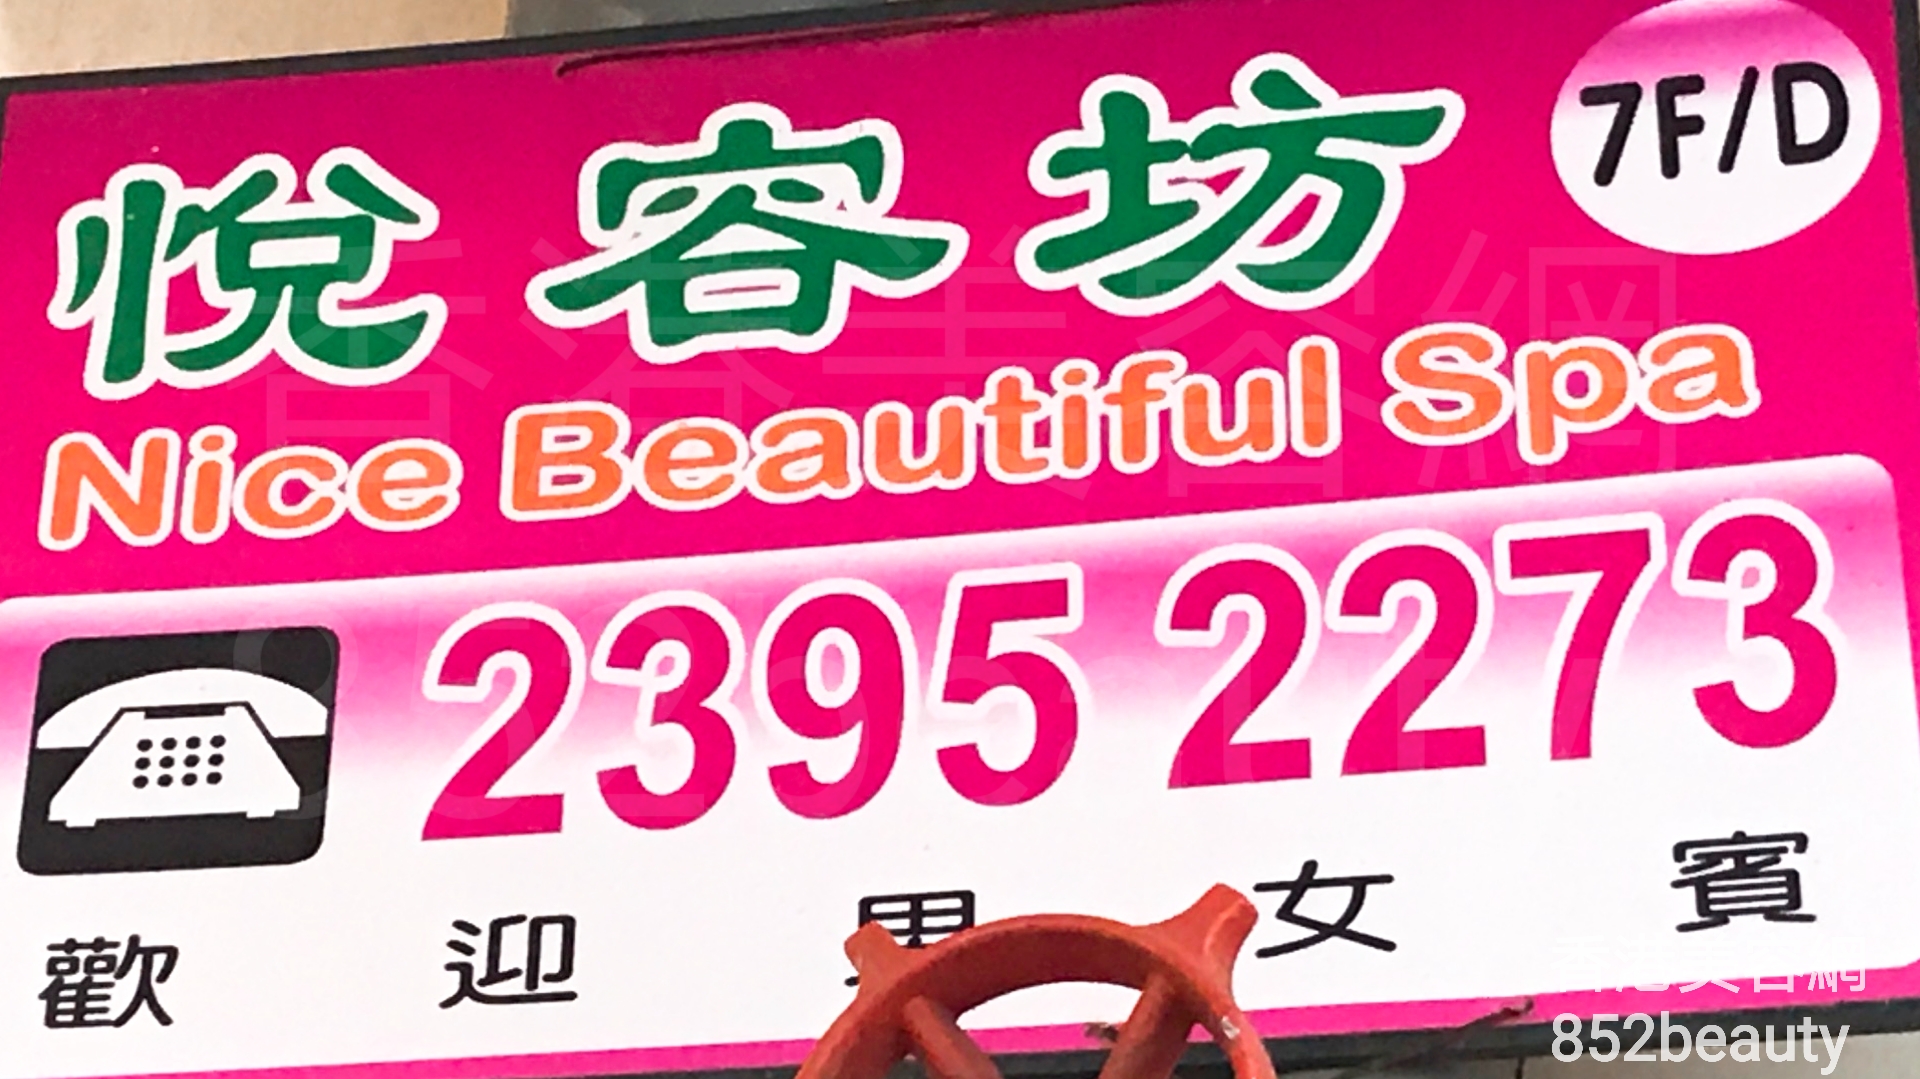 香港美容網 Hong Kong Beauty Salon 美容院 / 美容師: 悅容坊